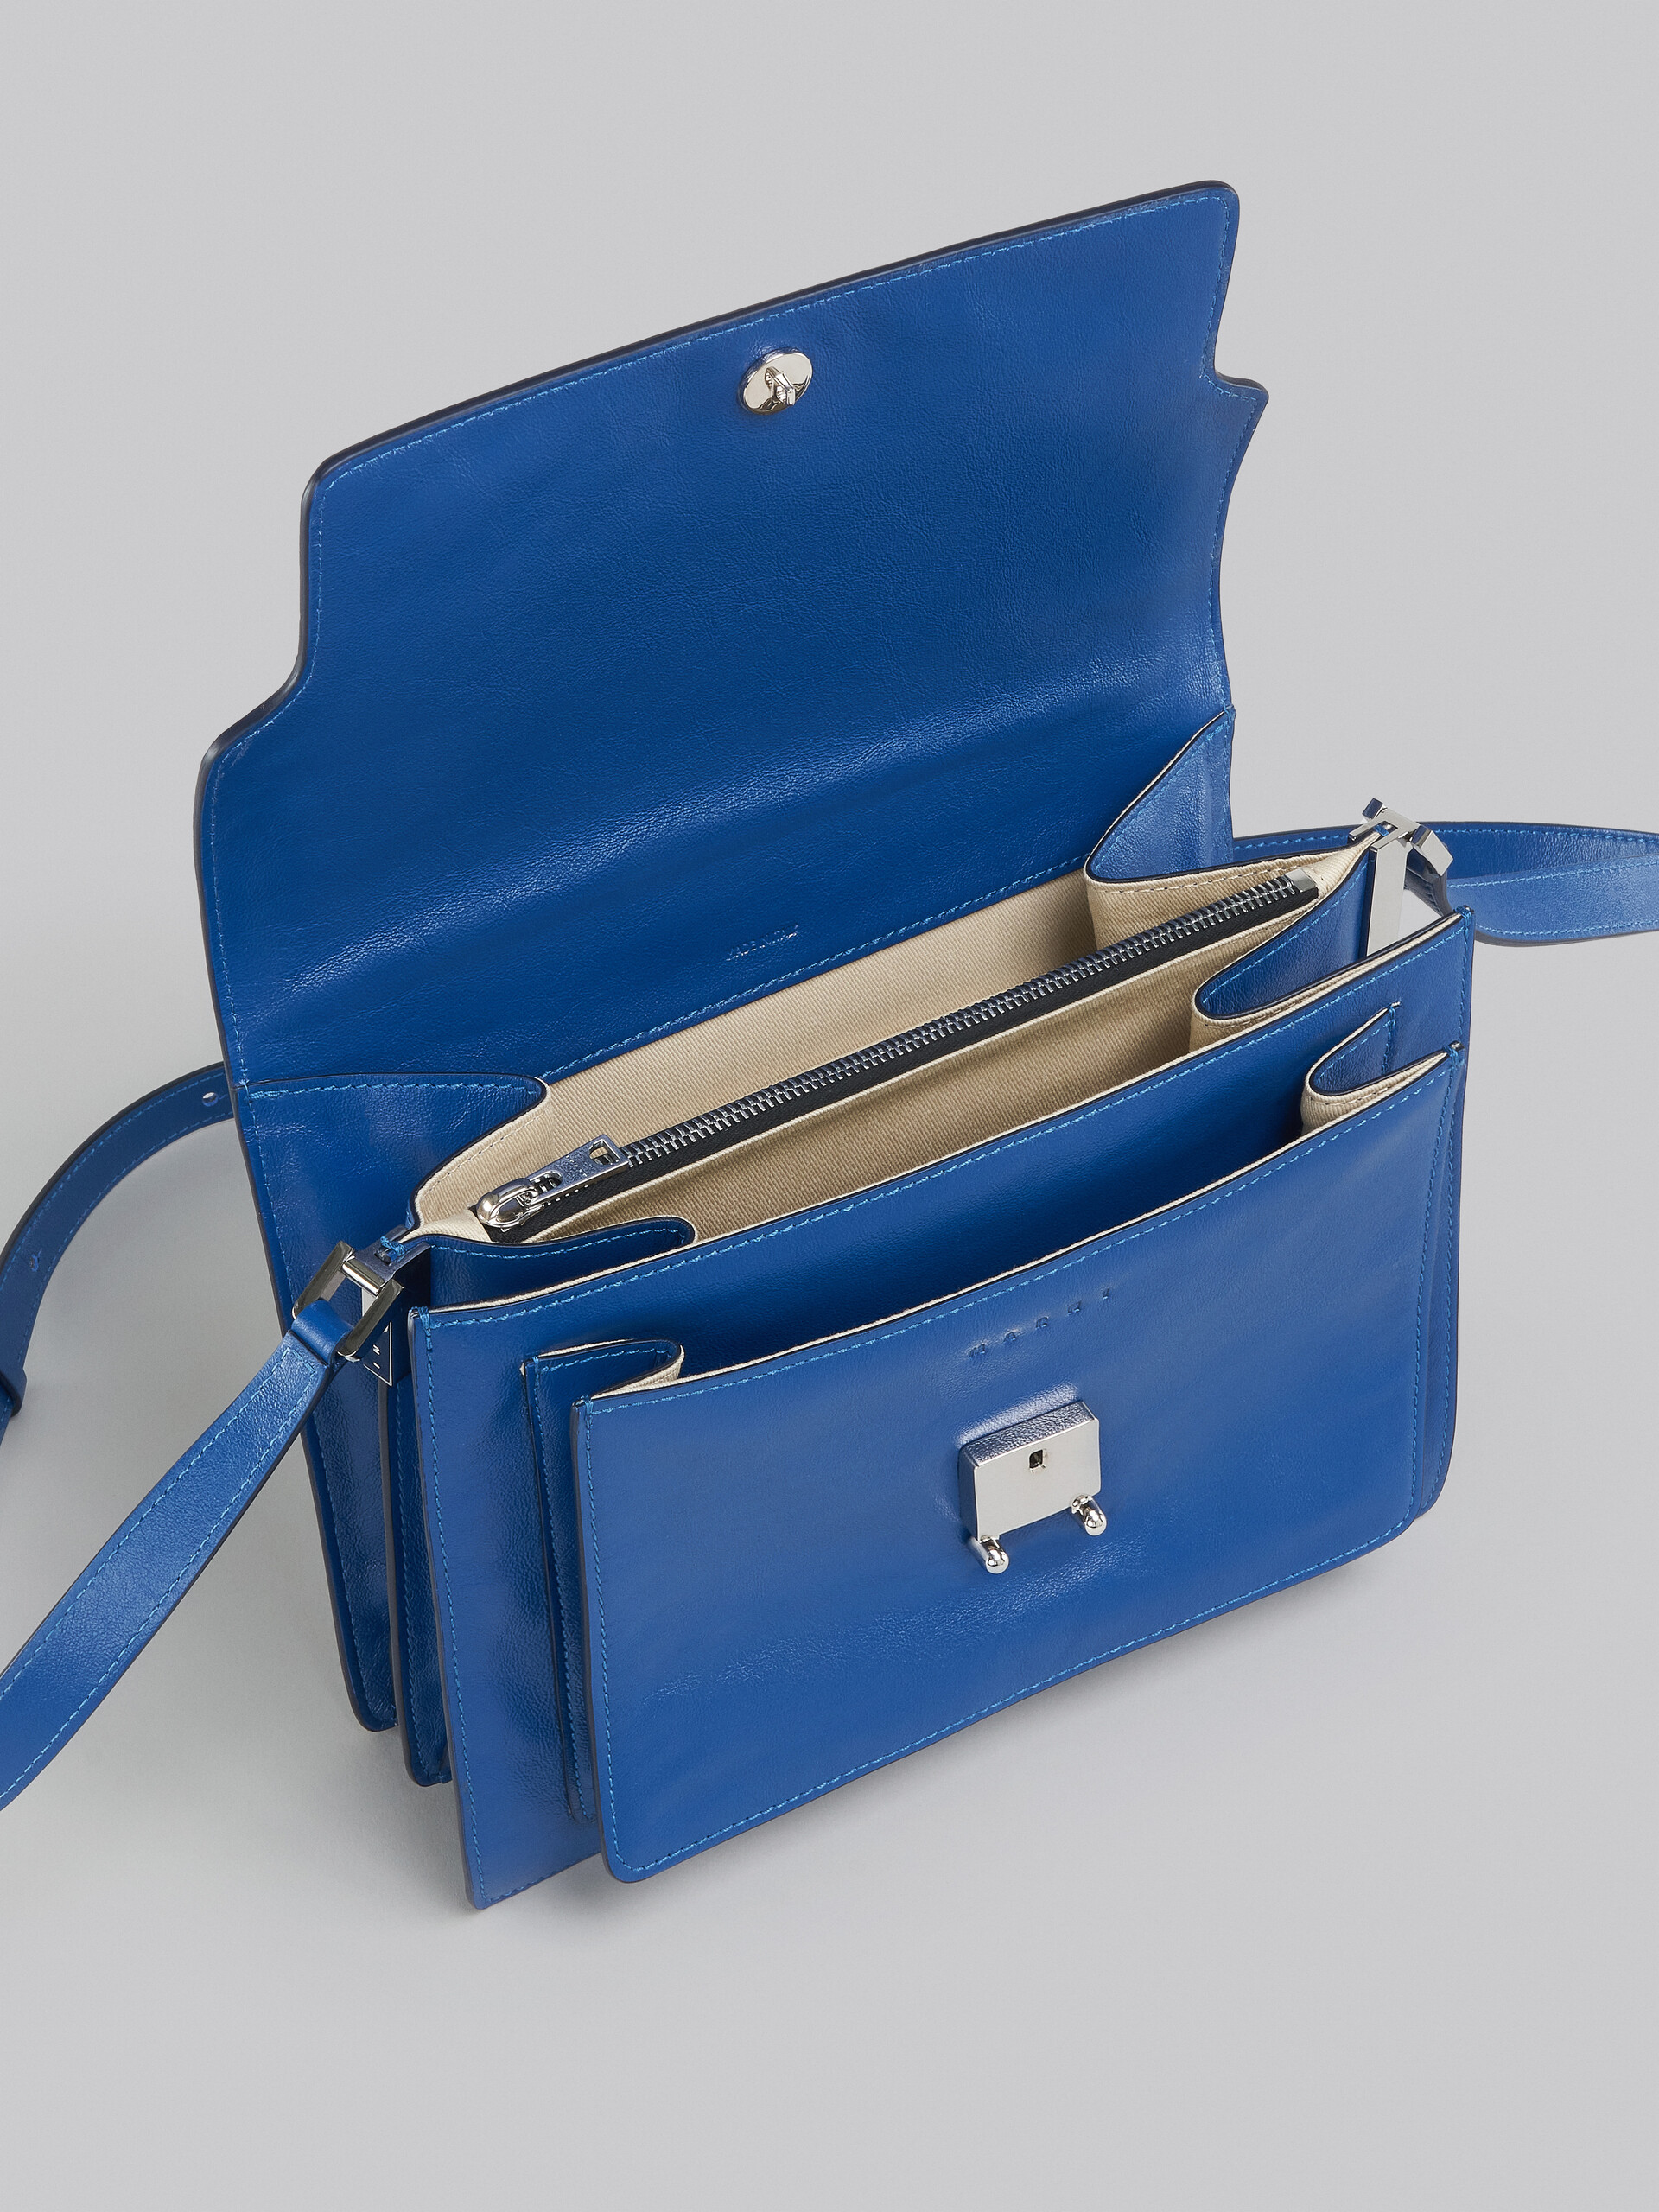 Trunk Soft Large Bag in blue leather - Shoulder Bags - Image 4